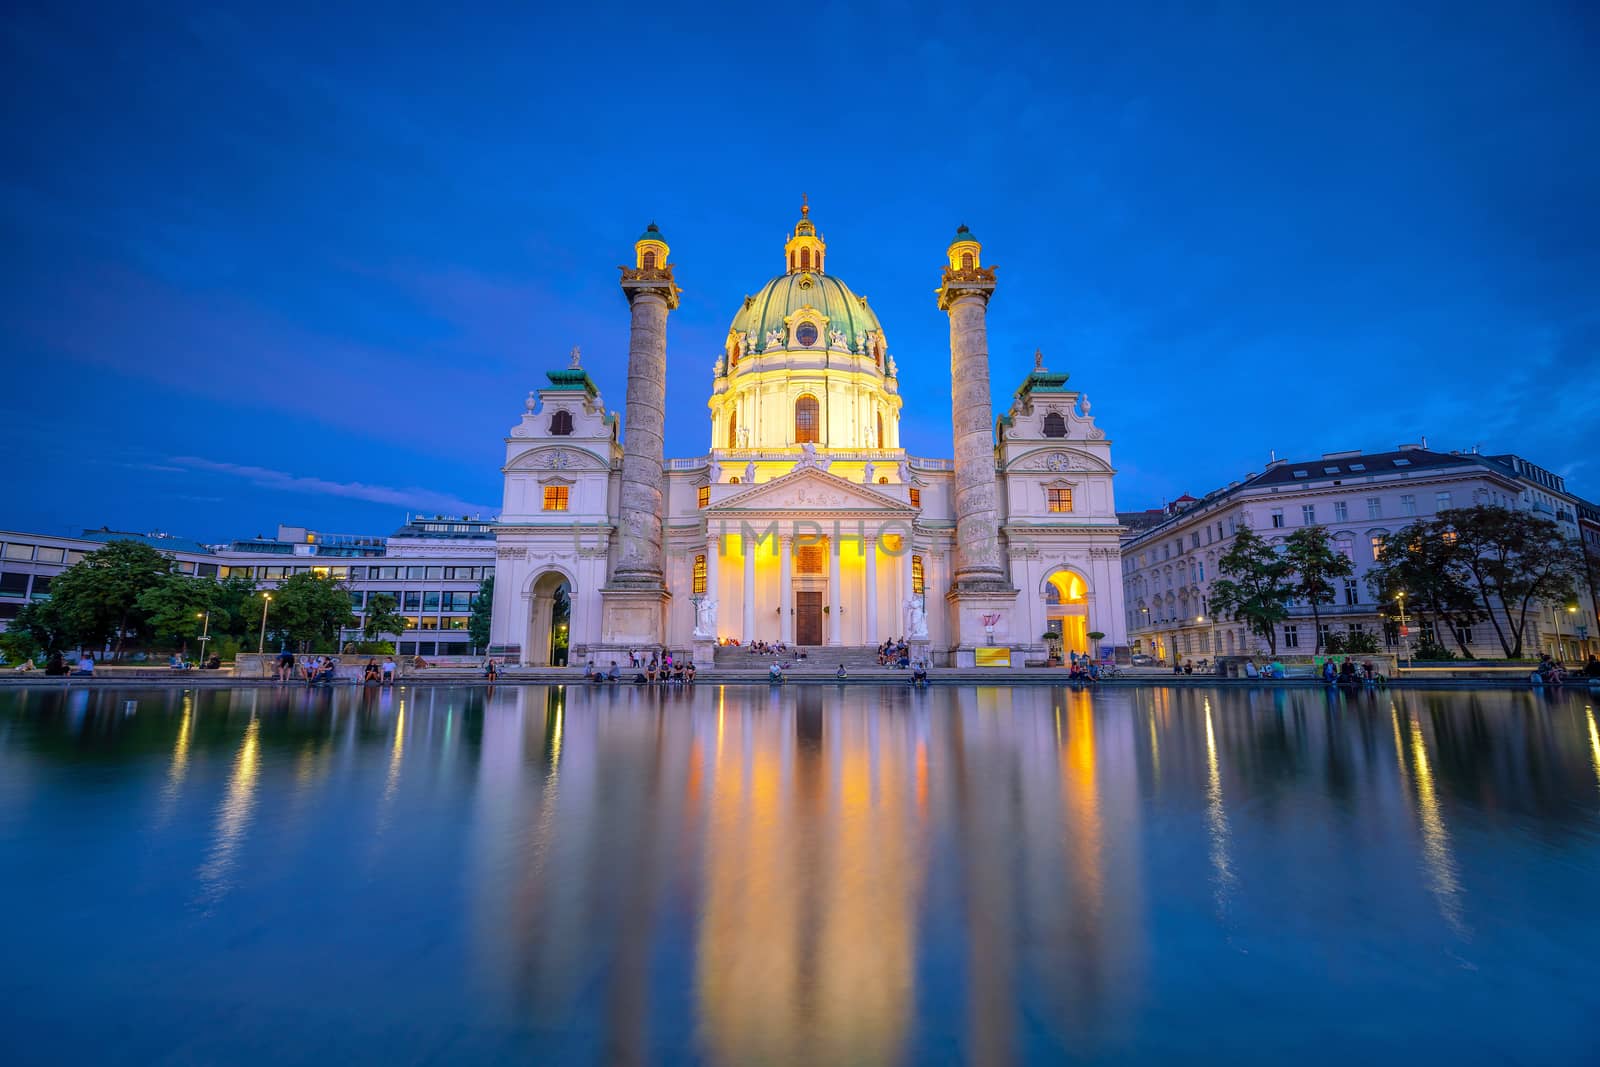 St. Charles's Church (Karlskirche) in Vienna, Austria by f11photo